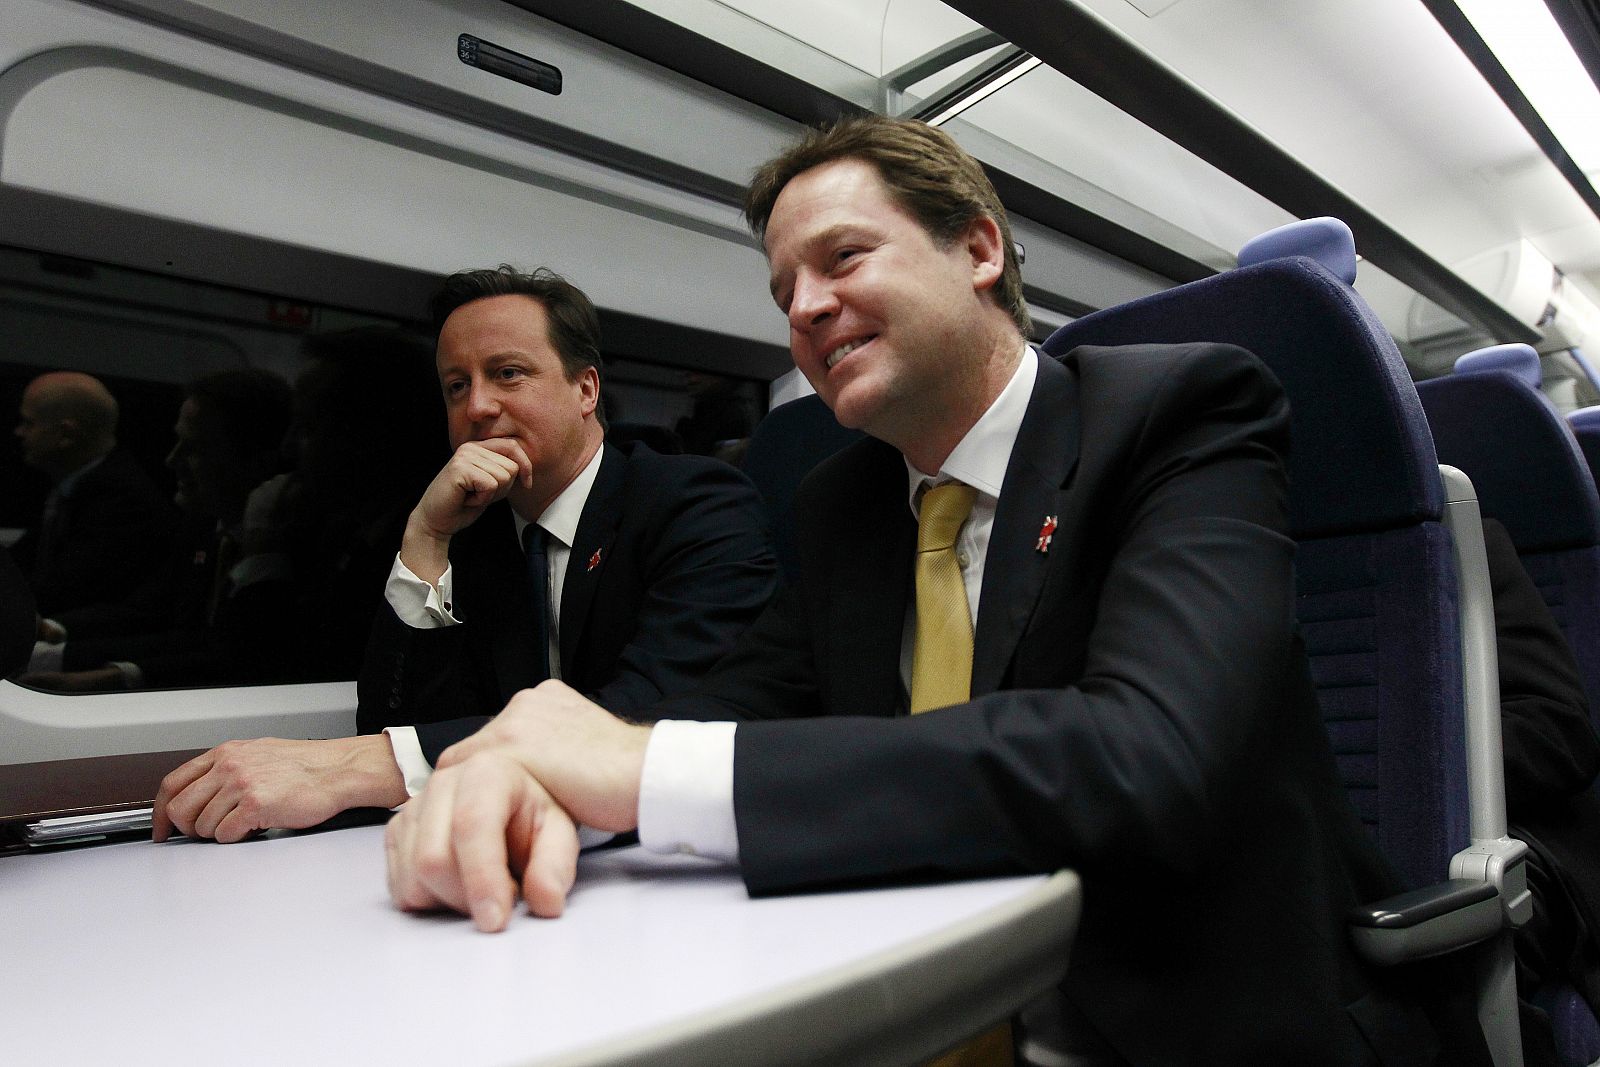 El primer ministro, David Cameron (izquierda), junto al viceprimer ministro Nick Clegg, en el tren que les lleva a la reunión de gabinete, celebrada en la sede de los Juegos Olímpicos 2012